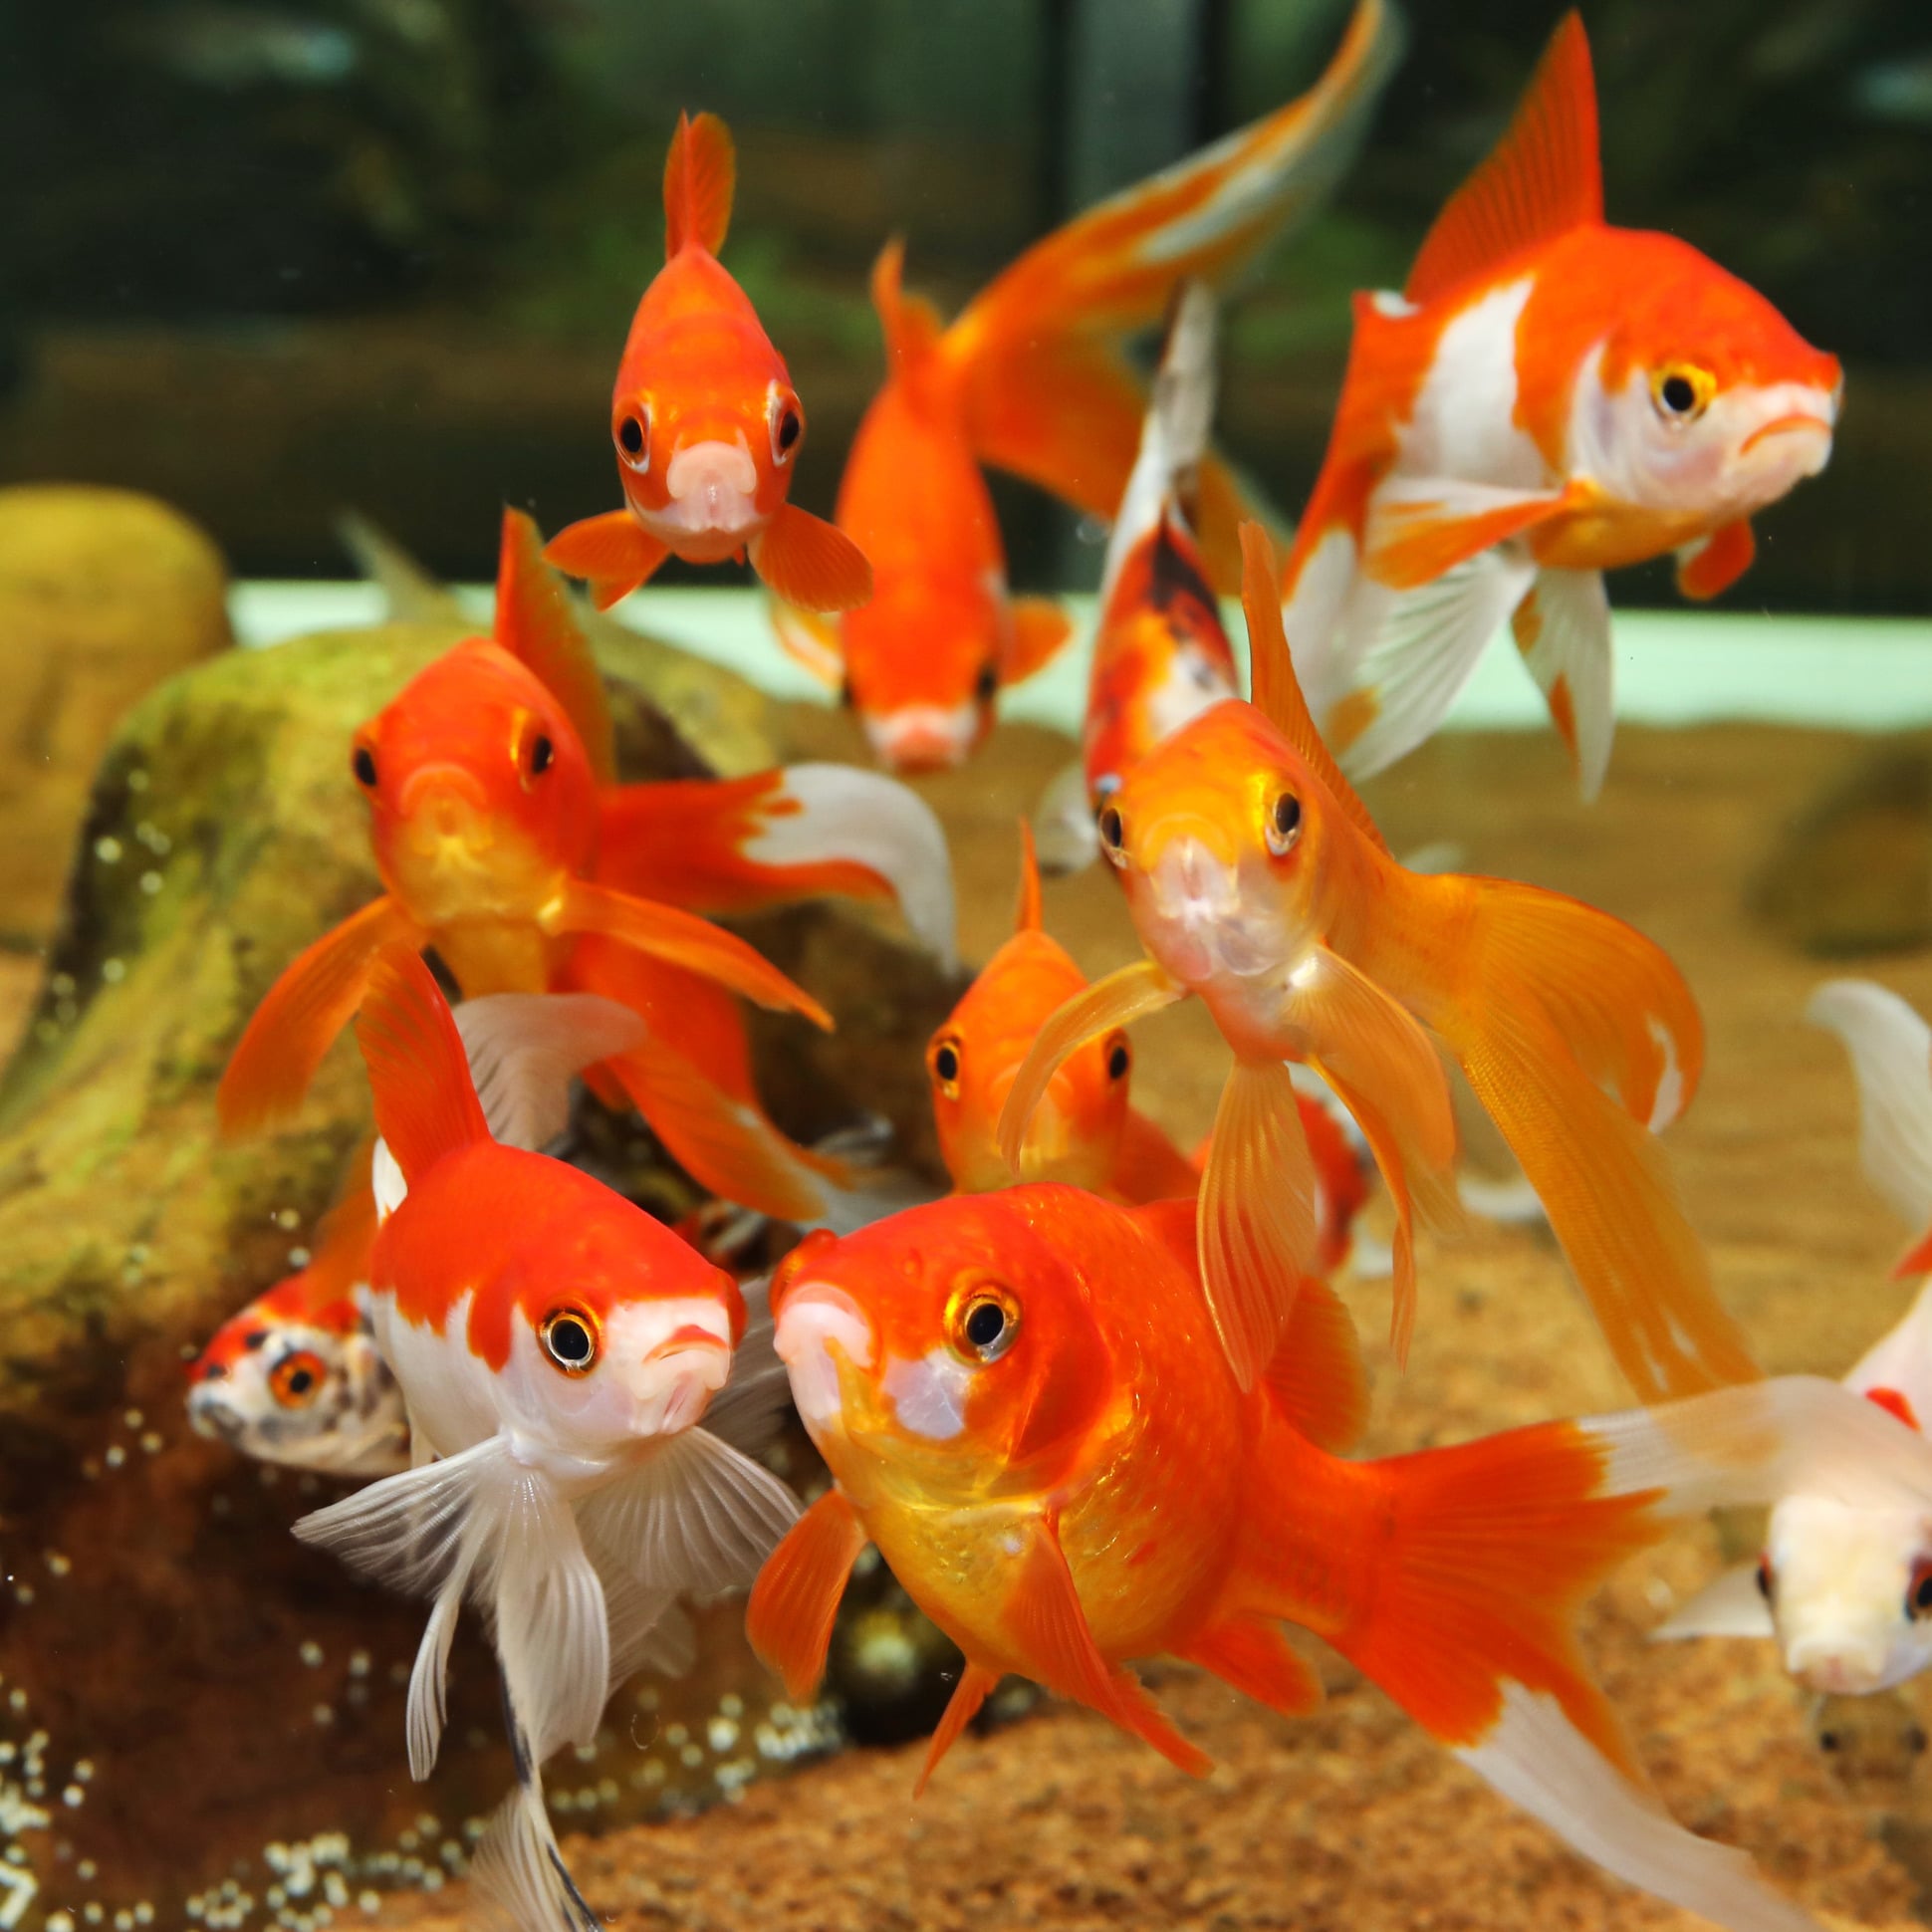 Sable ou gravier pour aquarium : que choisir pour vos poissons